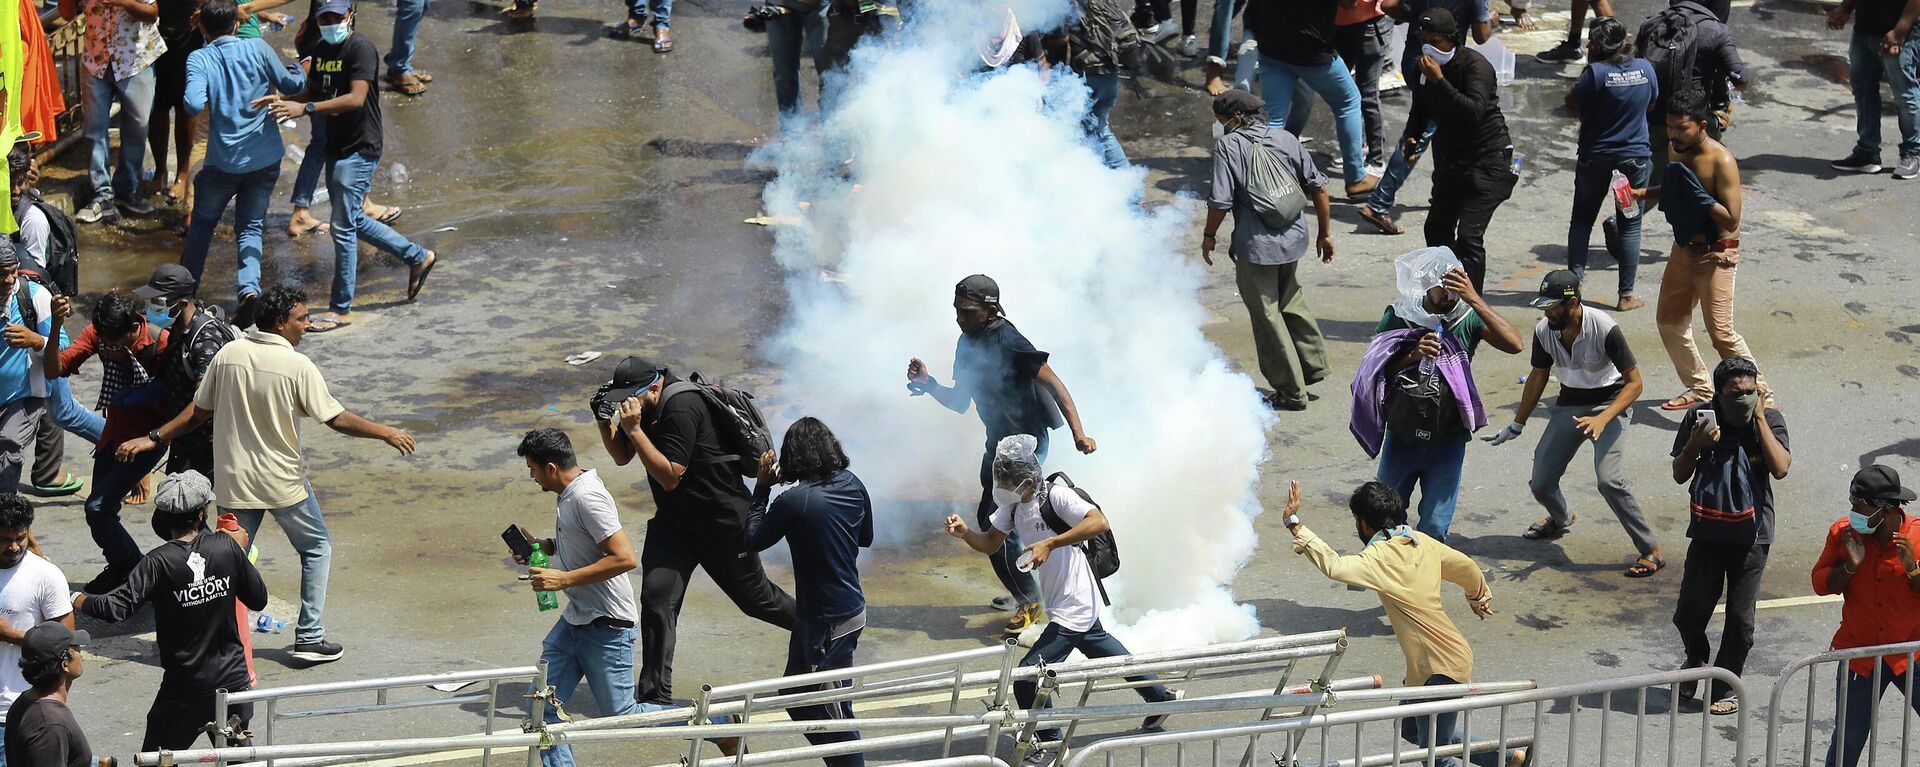 Polícia usa gás lacrimogêneo para dispersar manifestantes em Colombo, no Sri Lanka, em 9 de julho de 2022, em meio a grandes protestos contra o governo do país - Sputnik Brasil, 1920, 09.07.2022